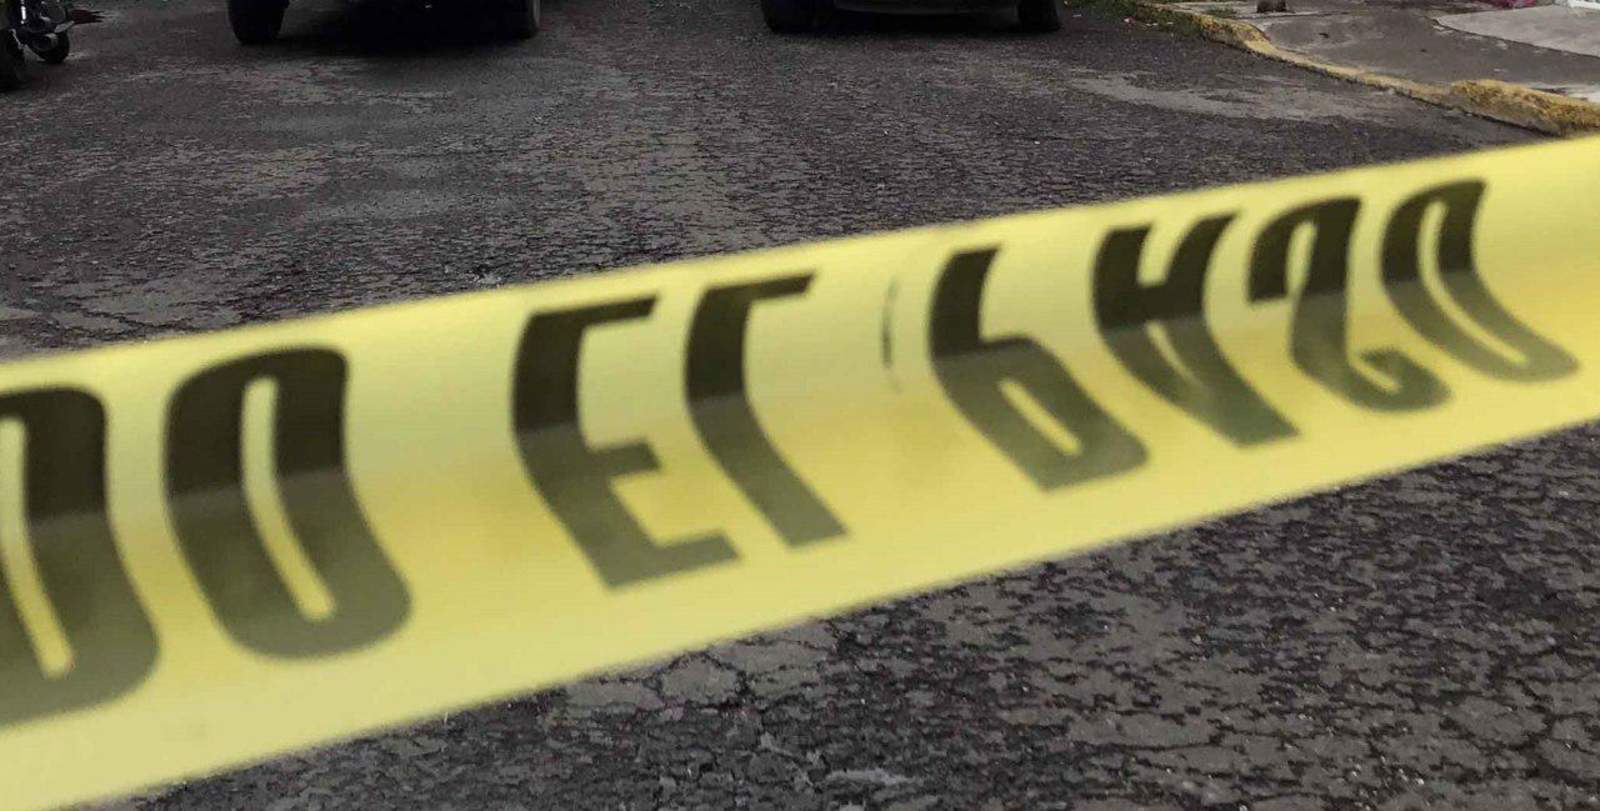 El cuerpo del coordinador de la Policía Estatal en la región Norte de Guerrero, Domingo Tlatempa Vázquez, fue encontrado desmembrado la noche de ayer martes a unos metros del Palacio de Gobierno, en Chilpancingo. (ARCHIVO)